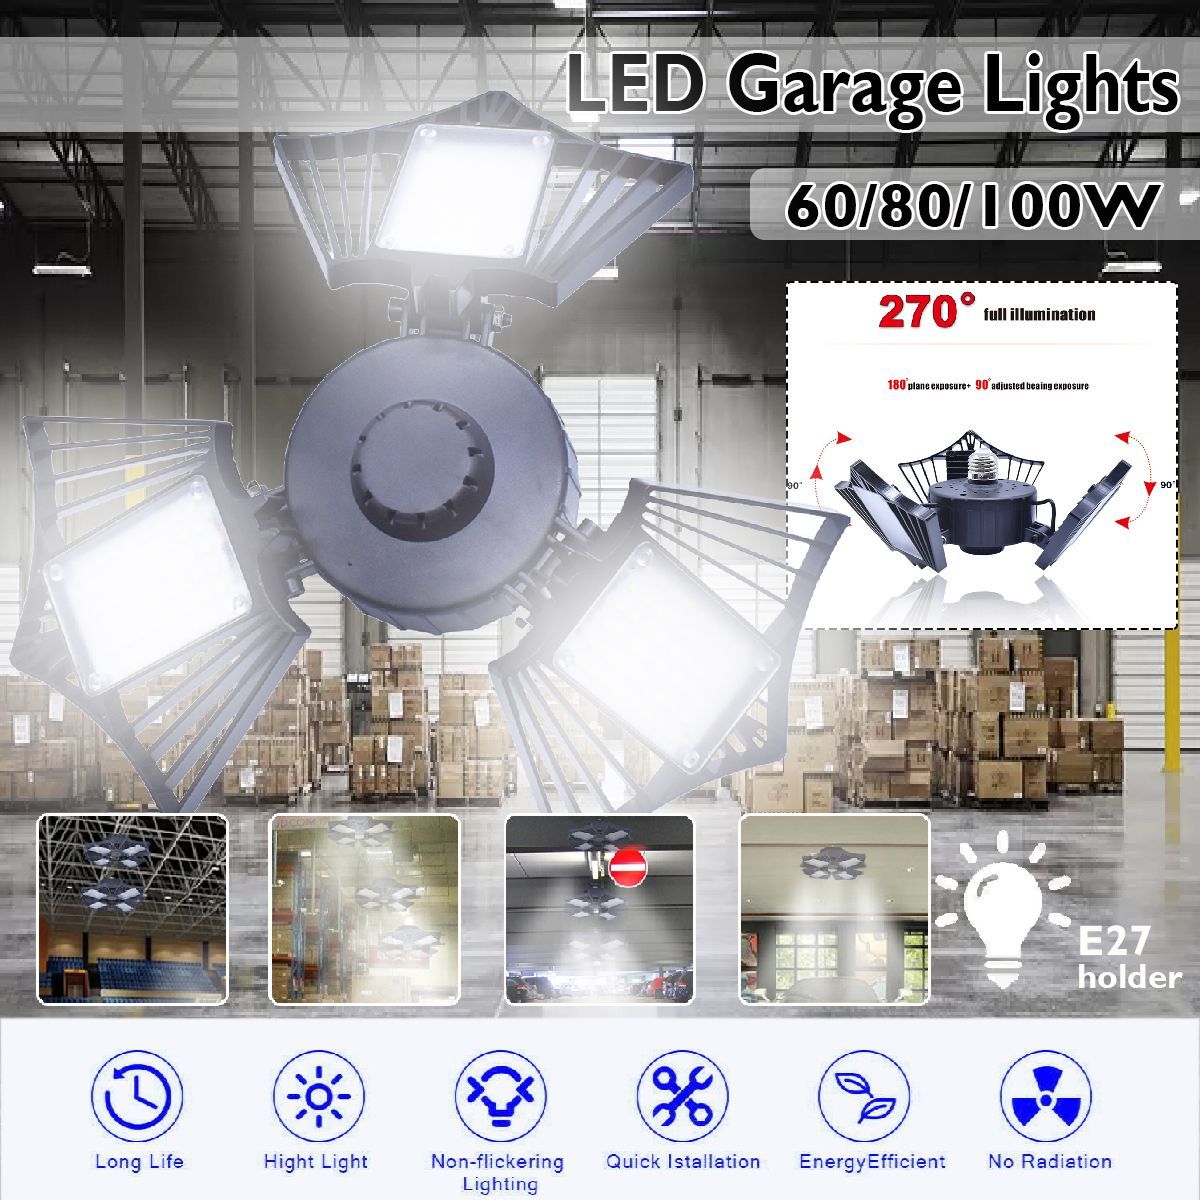 6080100W-LED-Garage-Lights-Deformable-Ceiling-Fixture-Workshop-Shop-Three-Leaf-1666775